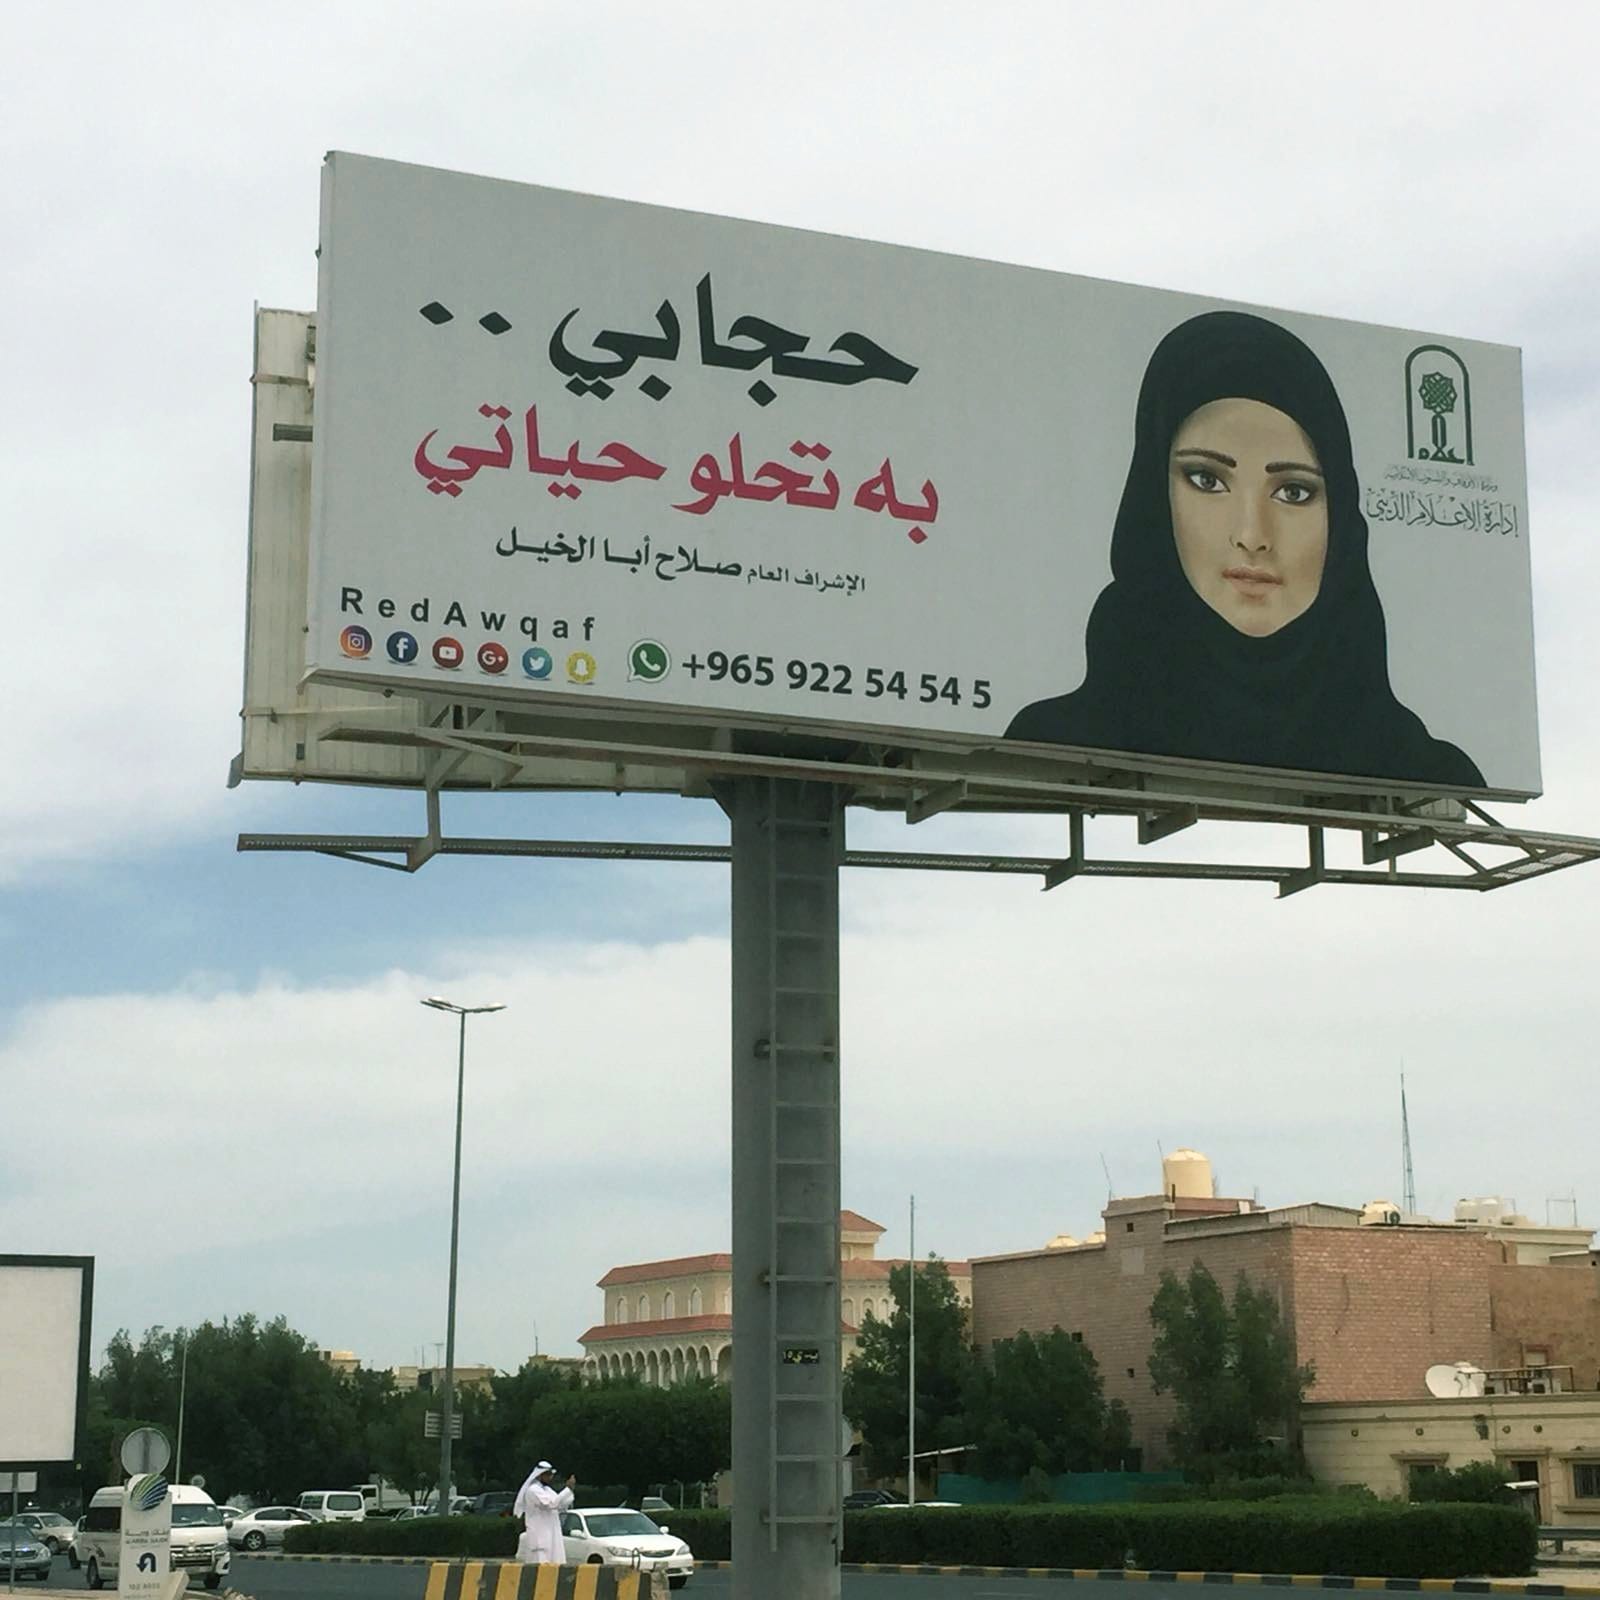 قصة هذه اللوحة الإعلانية التي فتحت معركة سياسية بالكويت